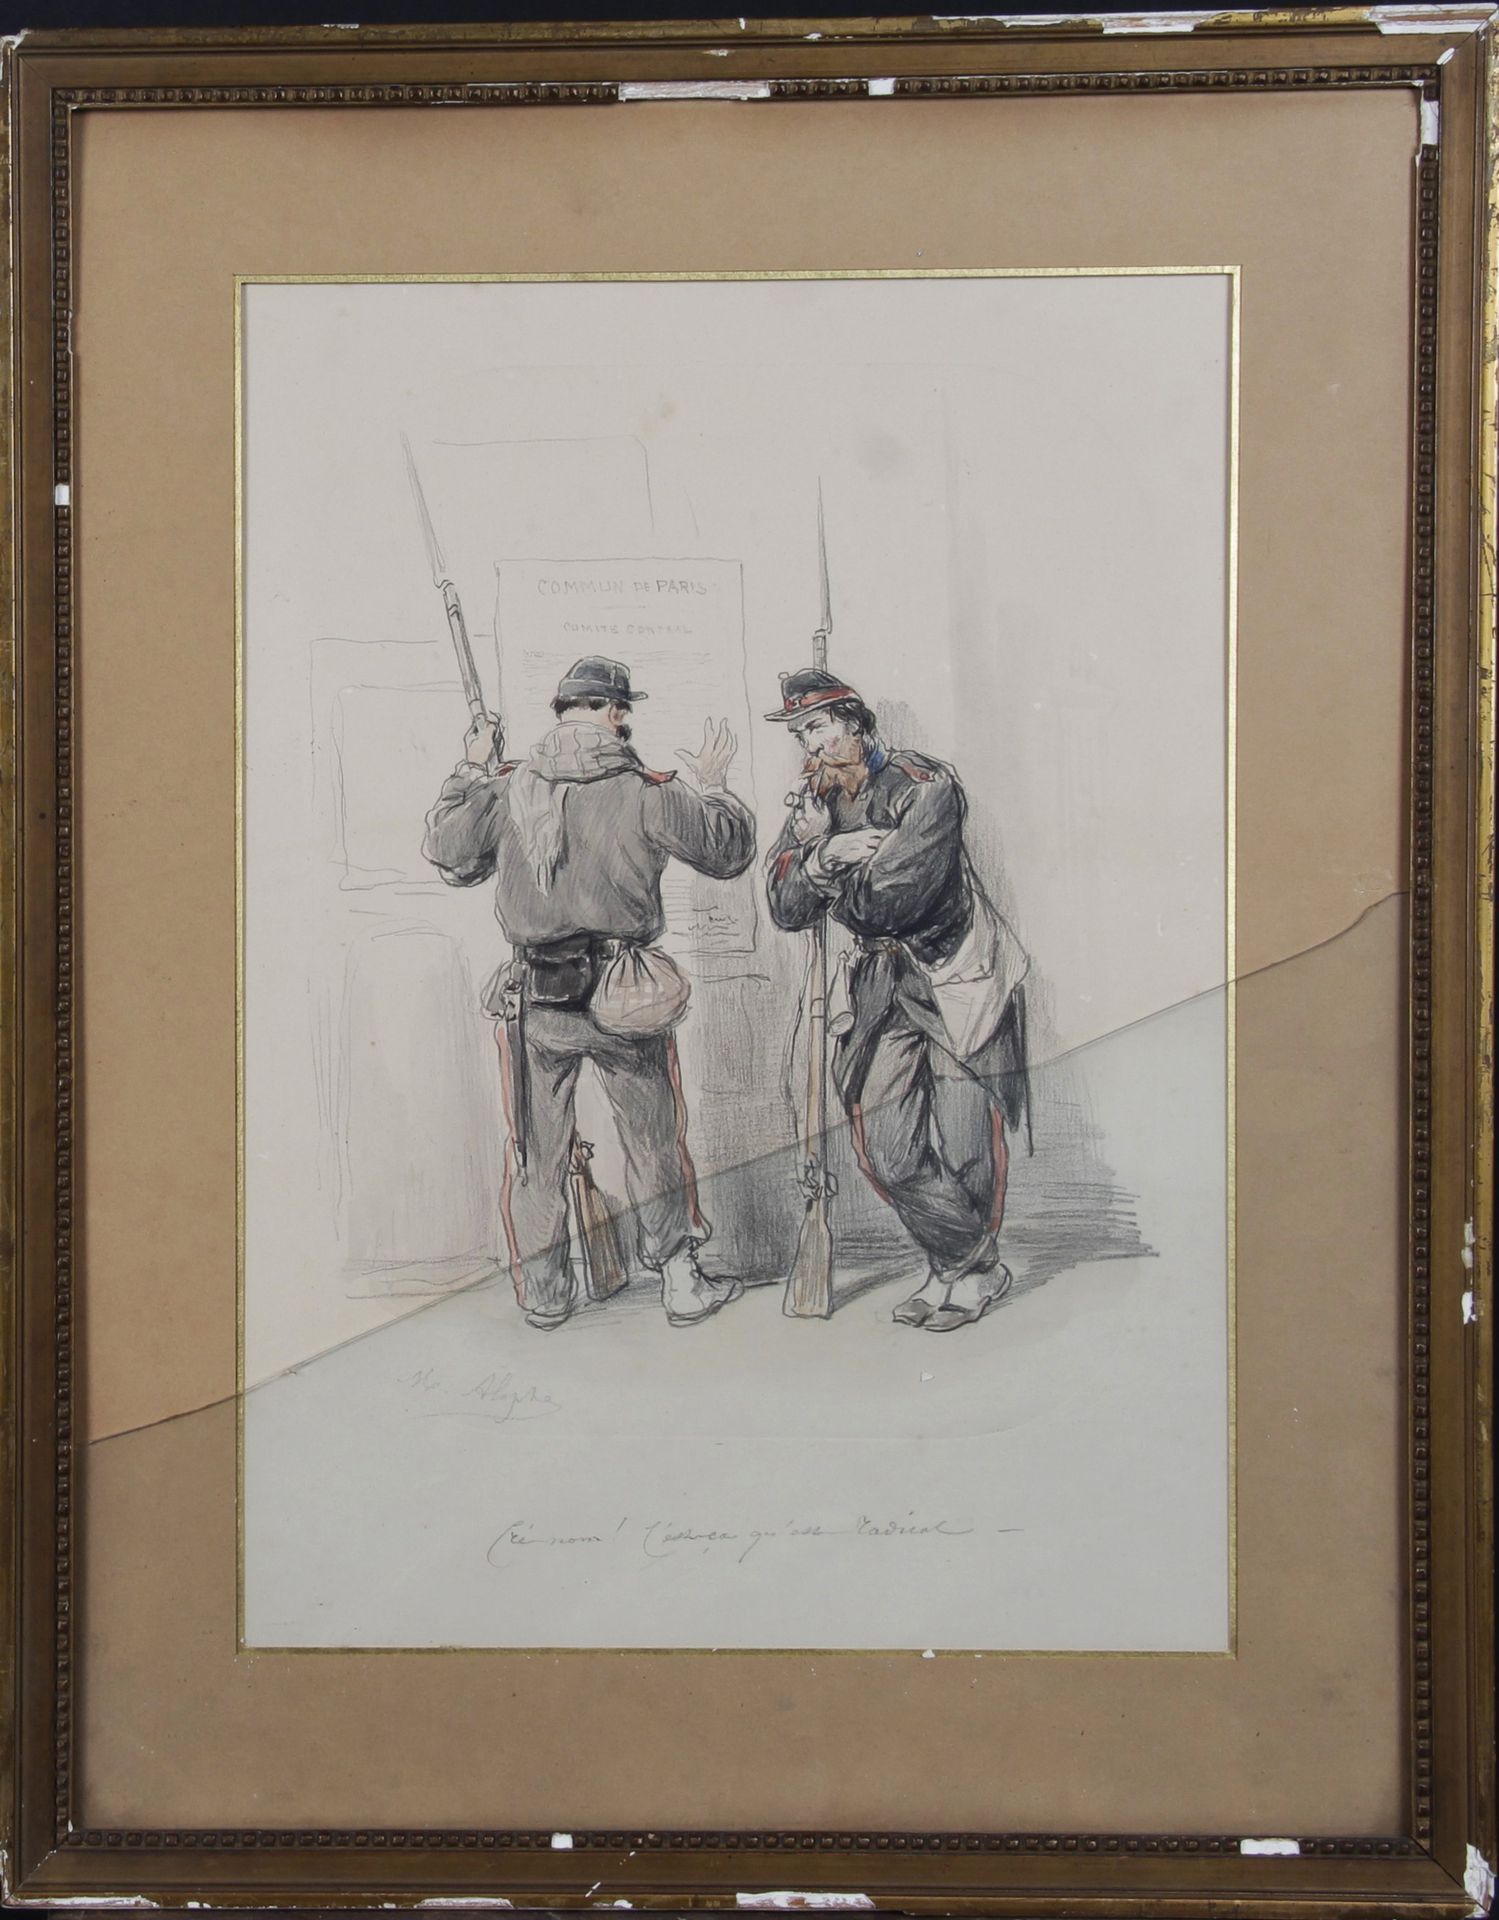 Null 亚历山大-梅努特-阿洛夫(1812-1883)

三幅彩色石版画:

- 公社的士兵们 

- 世俗的对话 "你看，爱是沉积在我们心中无限的希望，就像&hellip;